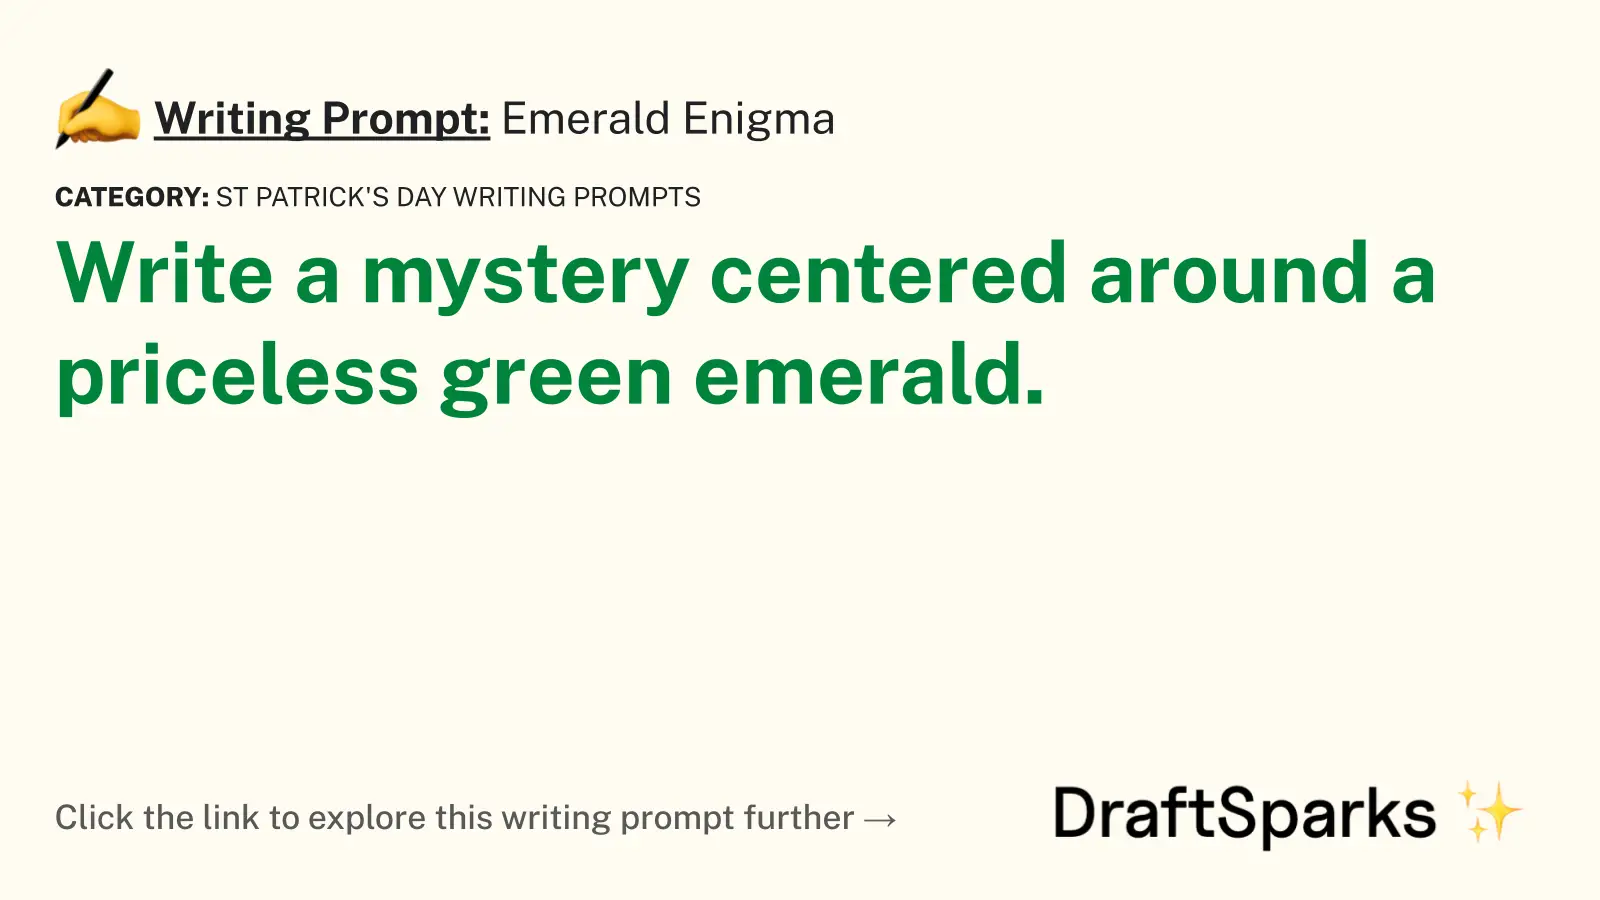 Emerald Enigma